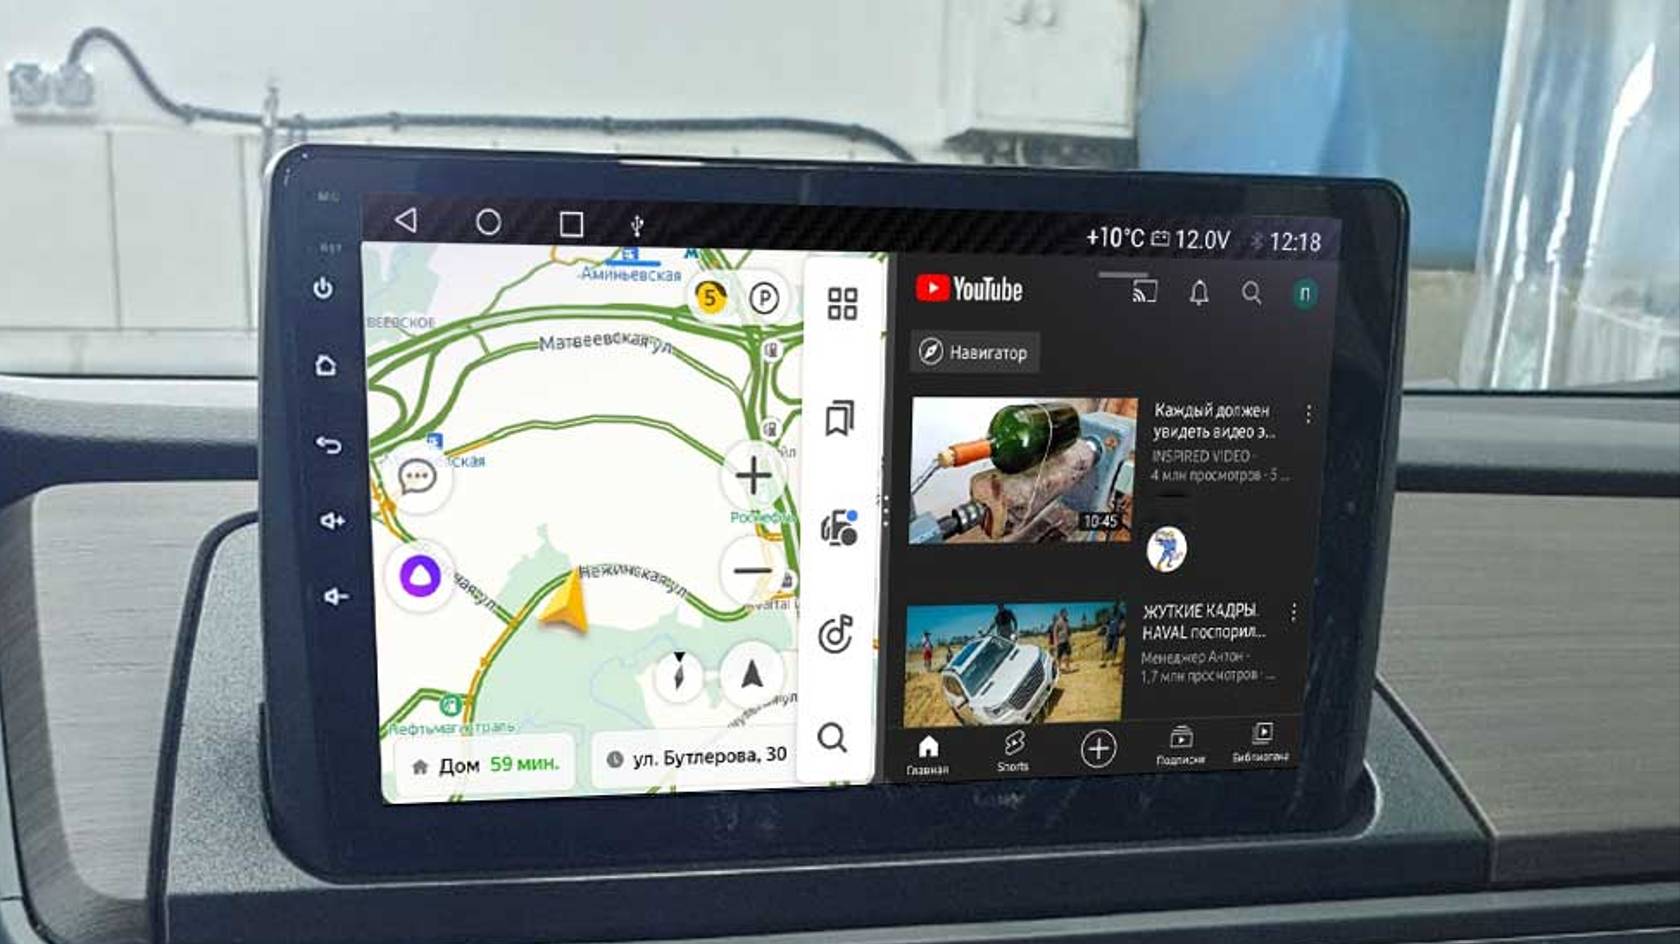 Навигация в Honda Odyssey 2020 из Китая, Андроид, большой экран, Яндекс Навигатор, тюнинг, камера